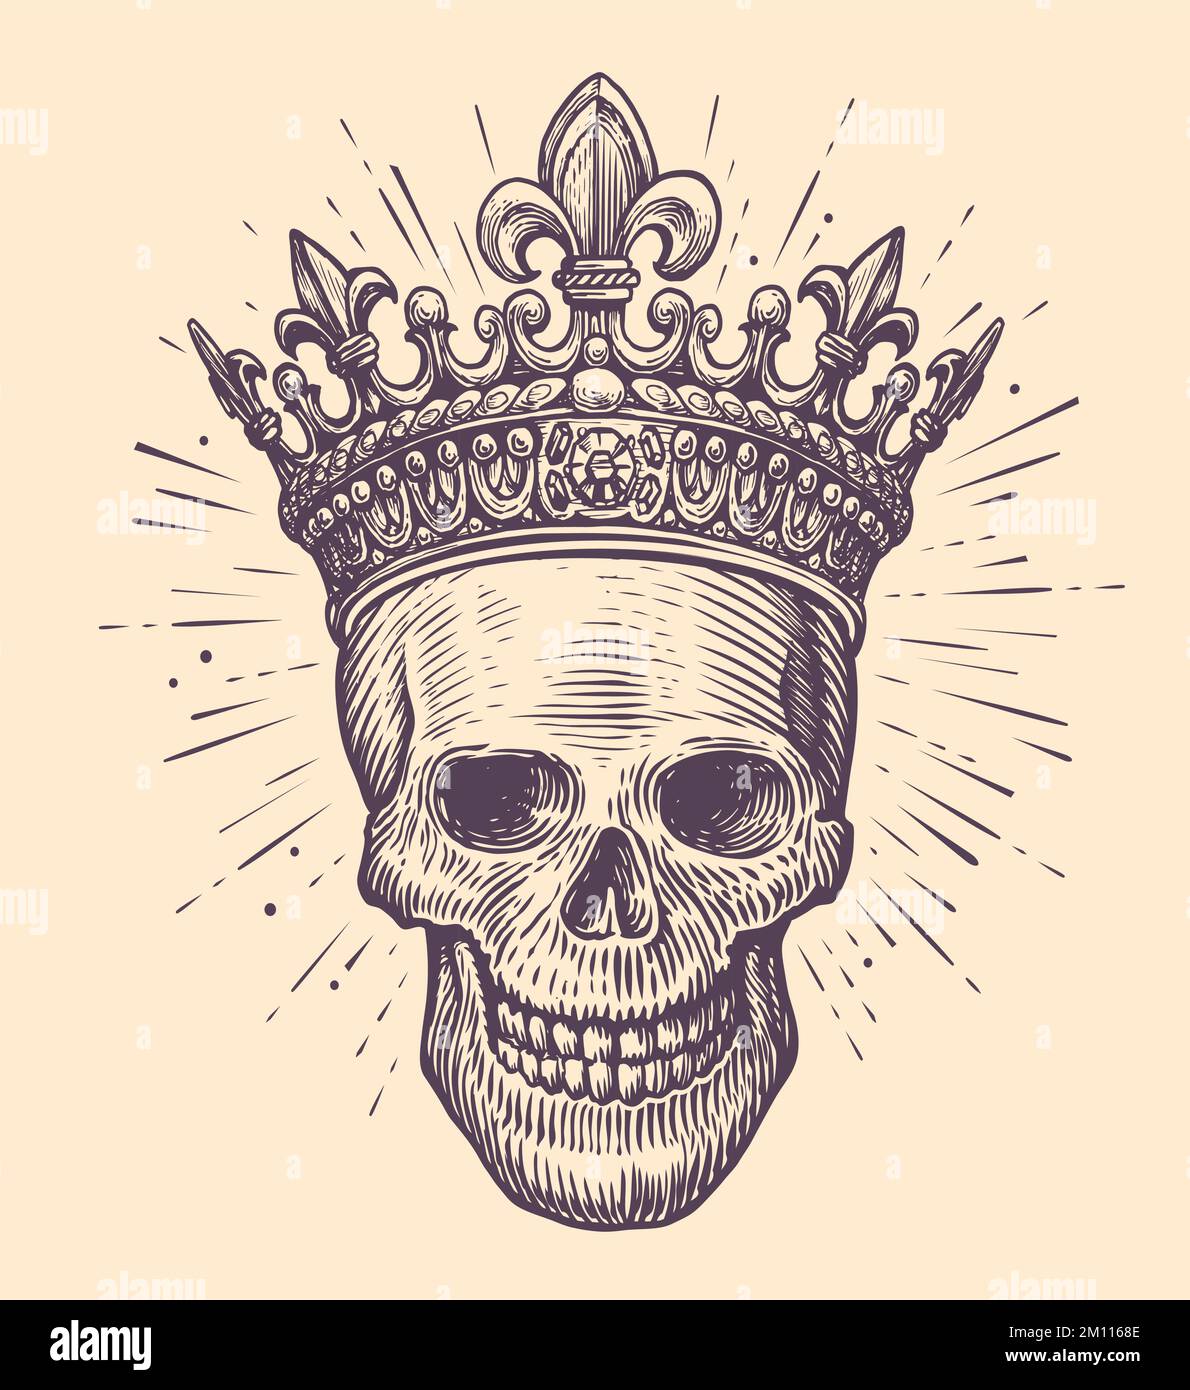 Cranio umano con corona del re. Disegno disegnato a mano in stile vintage. Illustrazione vettoriale del tatuaggio disegnato a mano Illustrazione Vettoriale